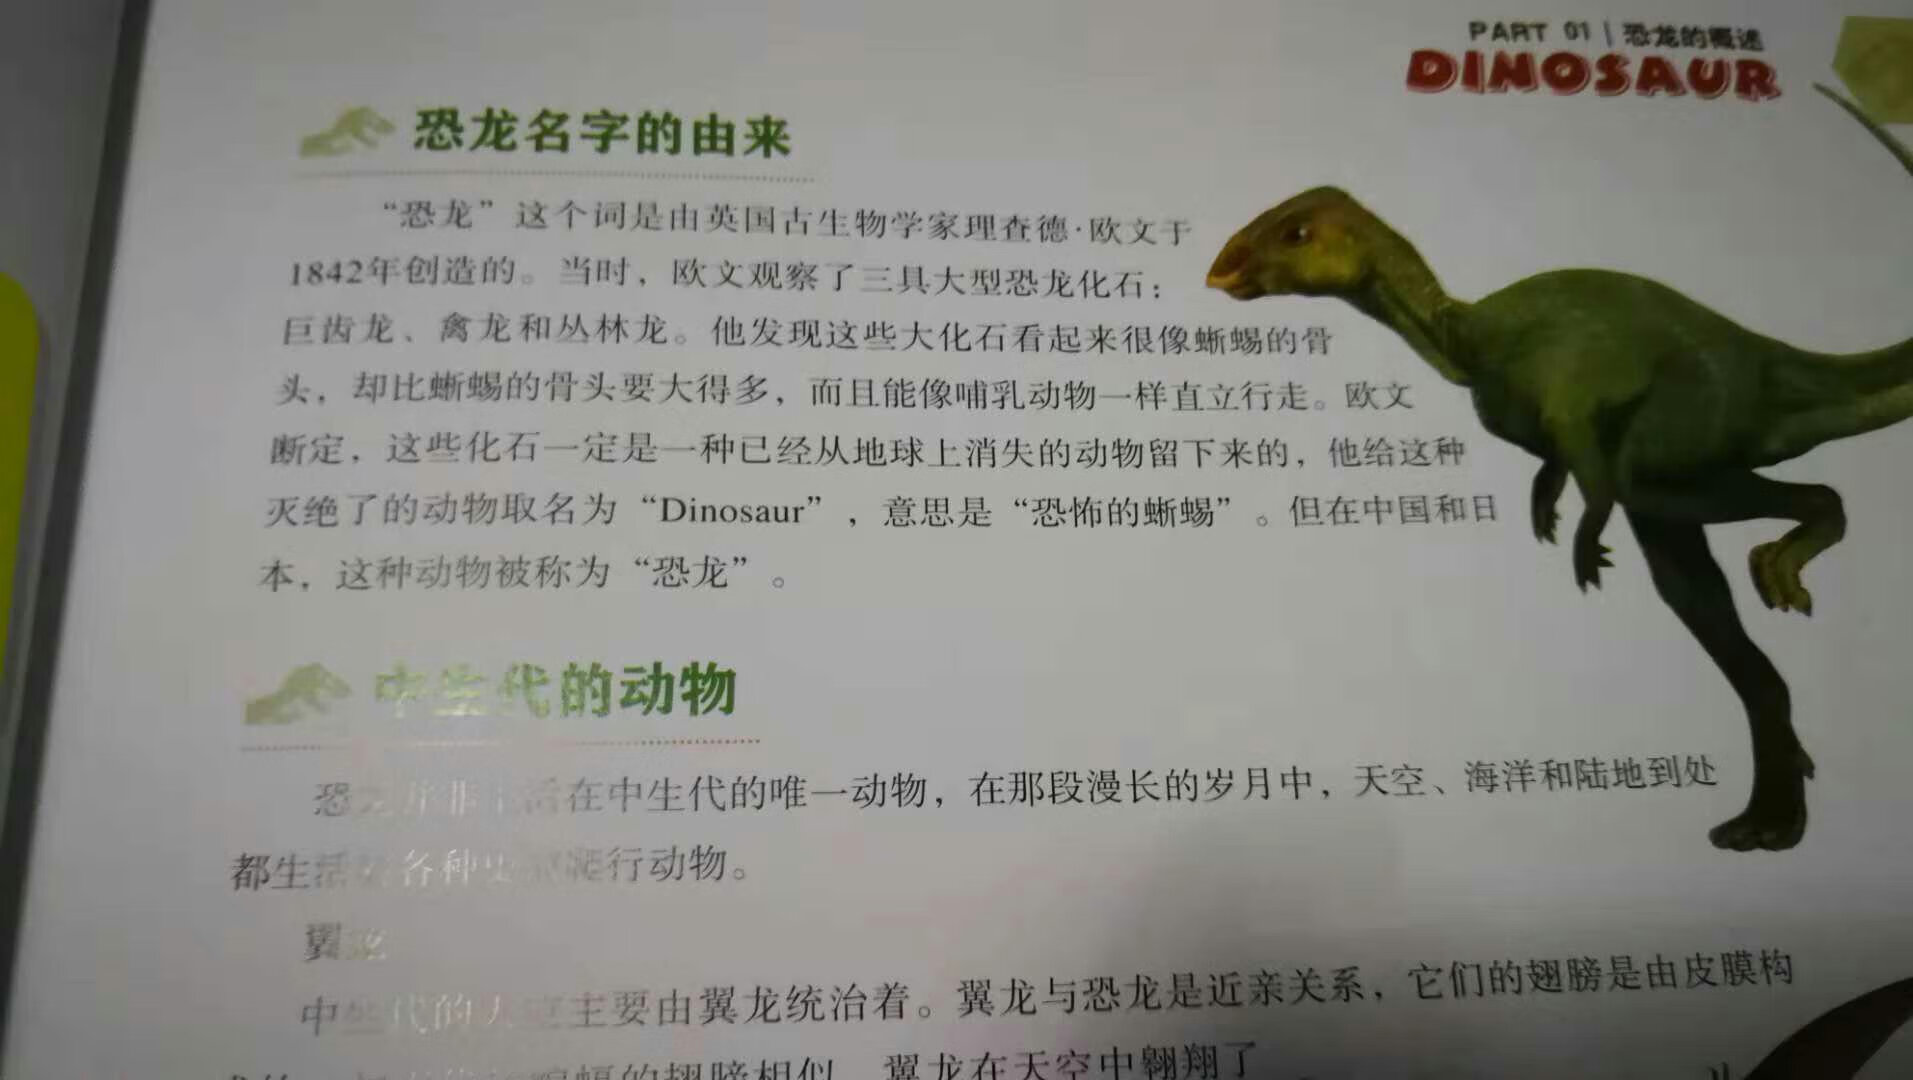 这本《中国恐龙百科全书》是2018年的新书，全铜版纸印刷。用300多页40多万字的篇幅，介绍了160多种曾经生活在中华大地上的中国恐龙。每一种都有全景式高清插图，对每种恐龙的特性都介绍的详细生动，不仅孩子喜欢看，家长们也可以一起补补课。双十一大促，正好可以买一本！